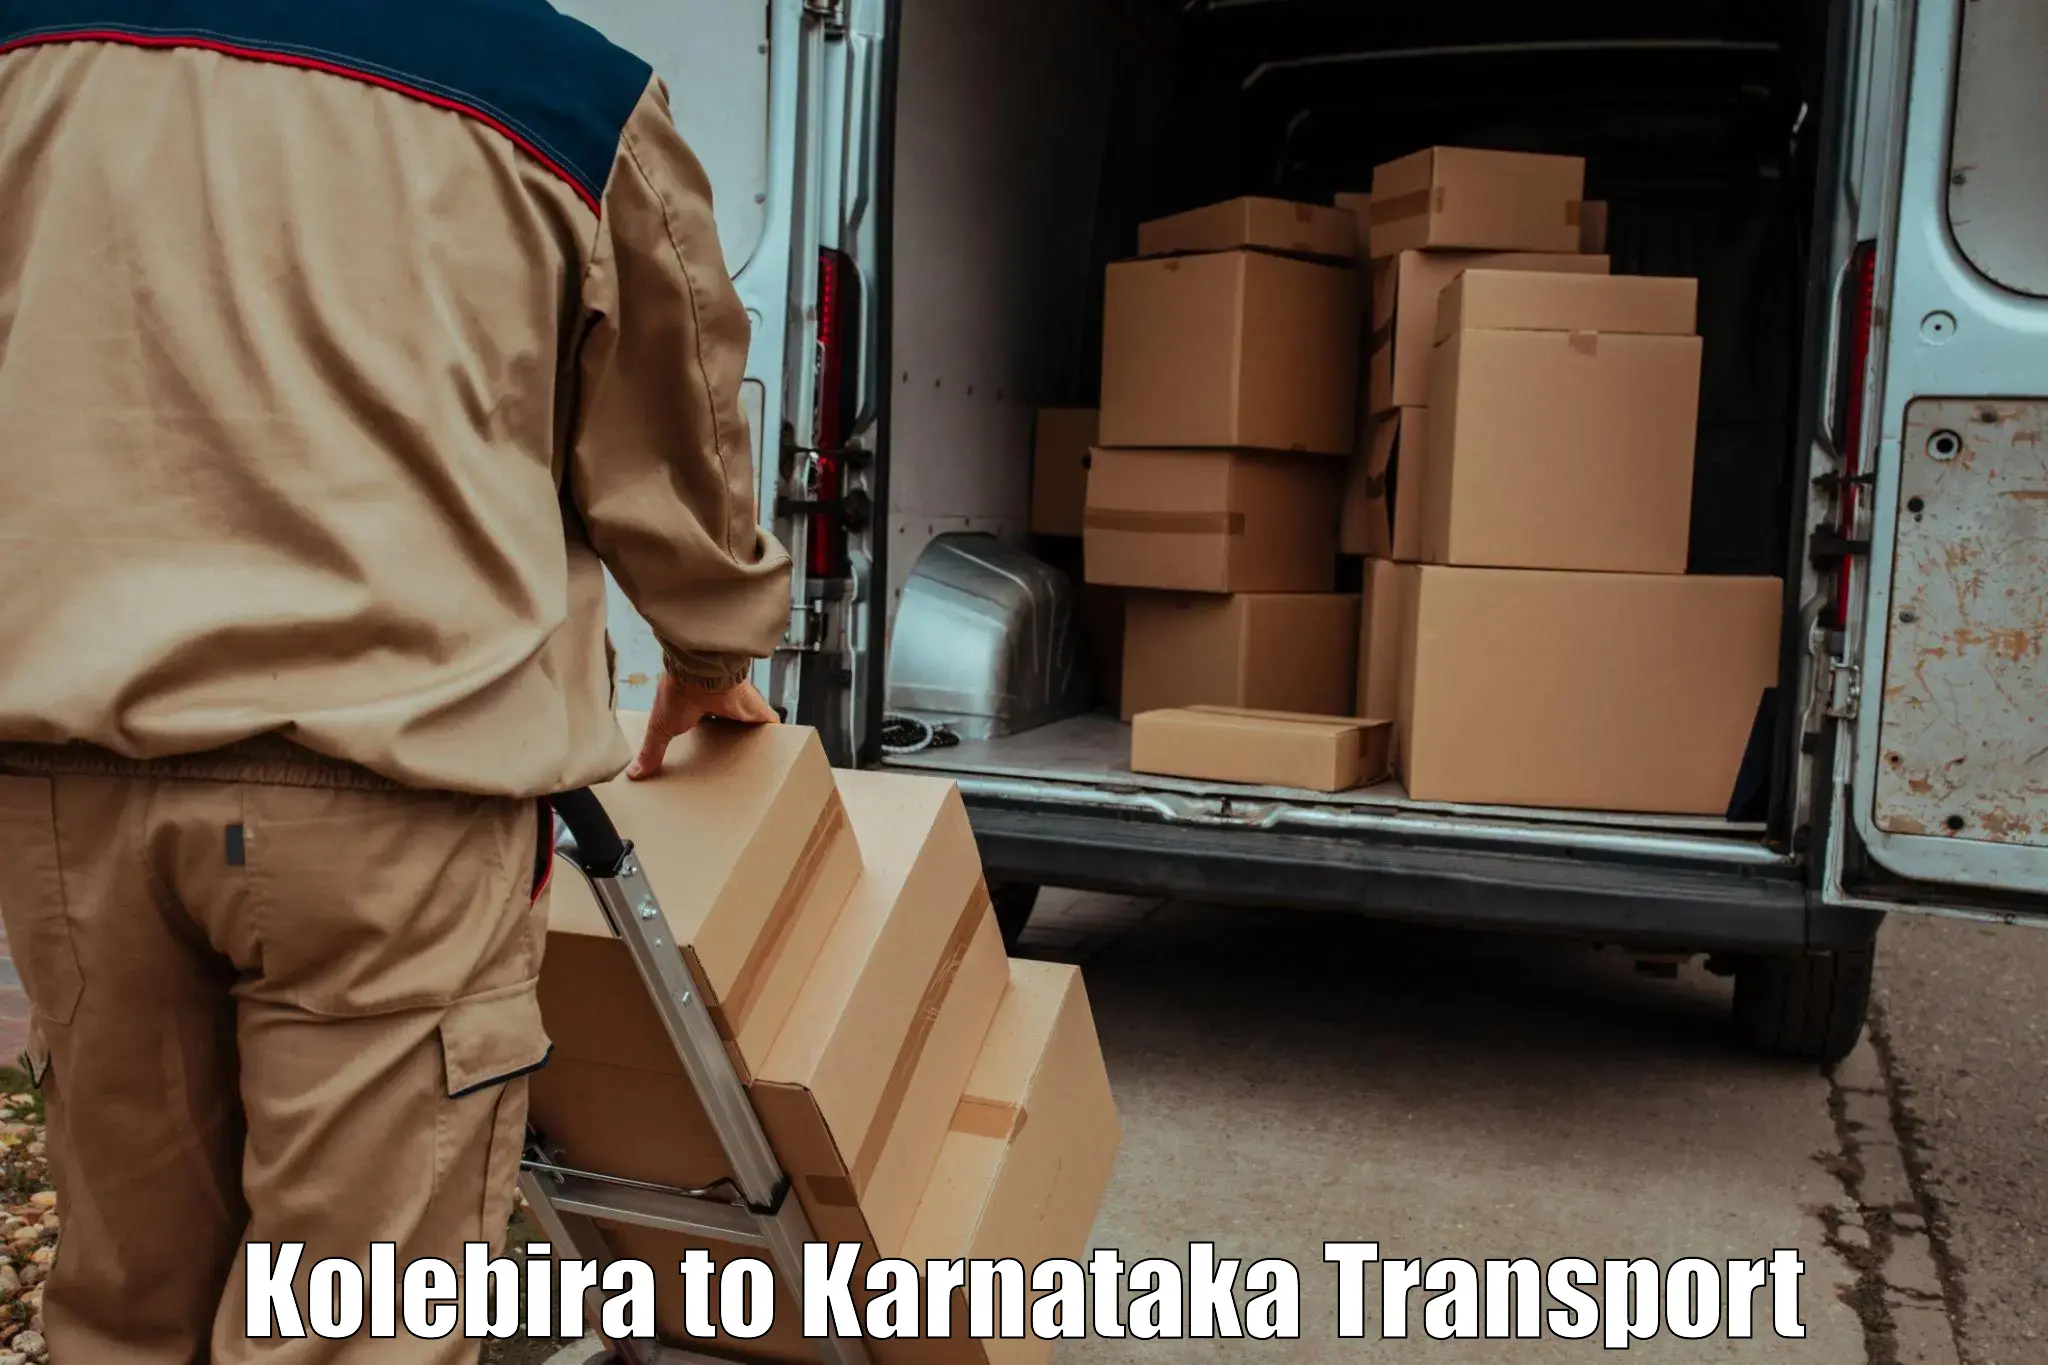 Bike transport service Kolebira to Surathkal